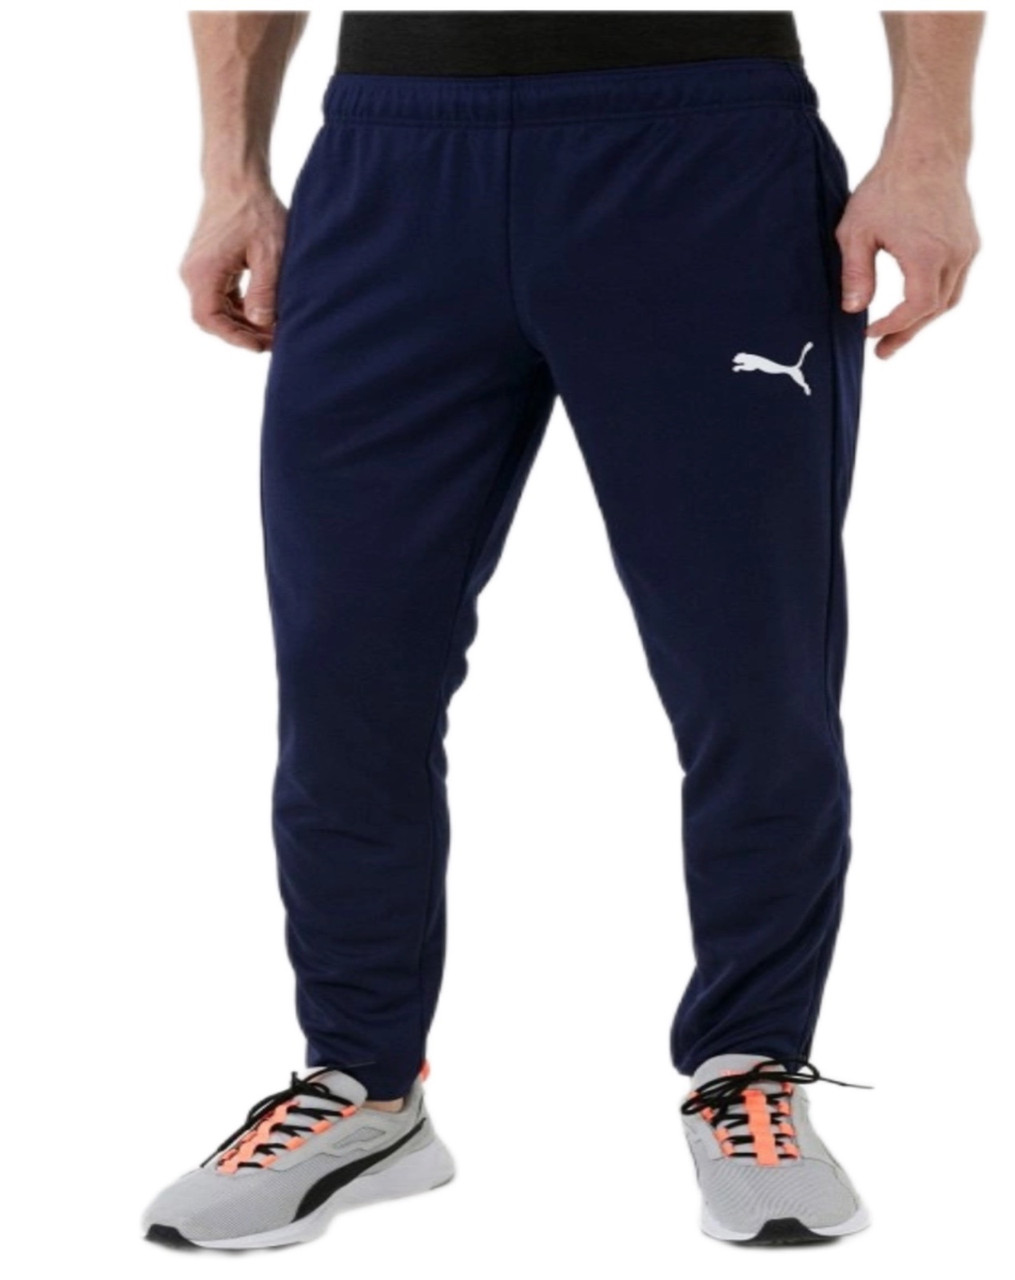 Спортивні штани чоловічі з манжетами, темно-синіє. Великий розмір (56-58), трикотаж